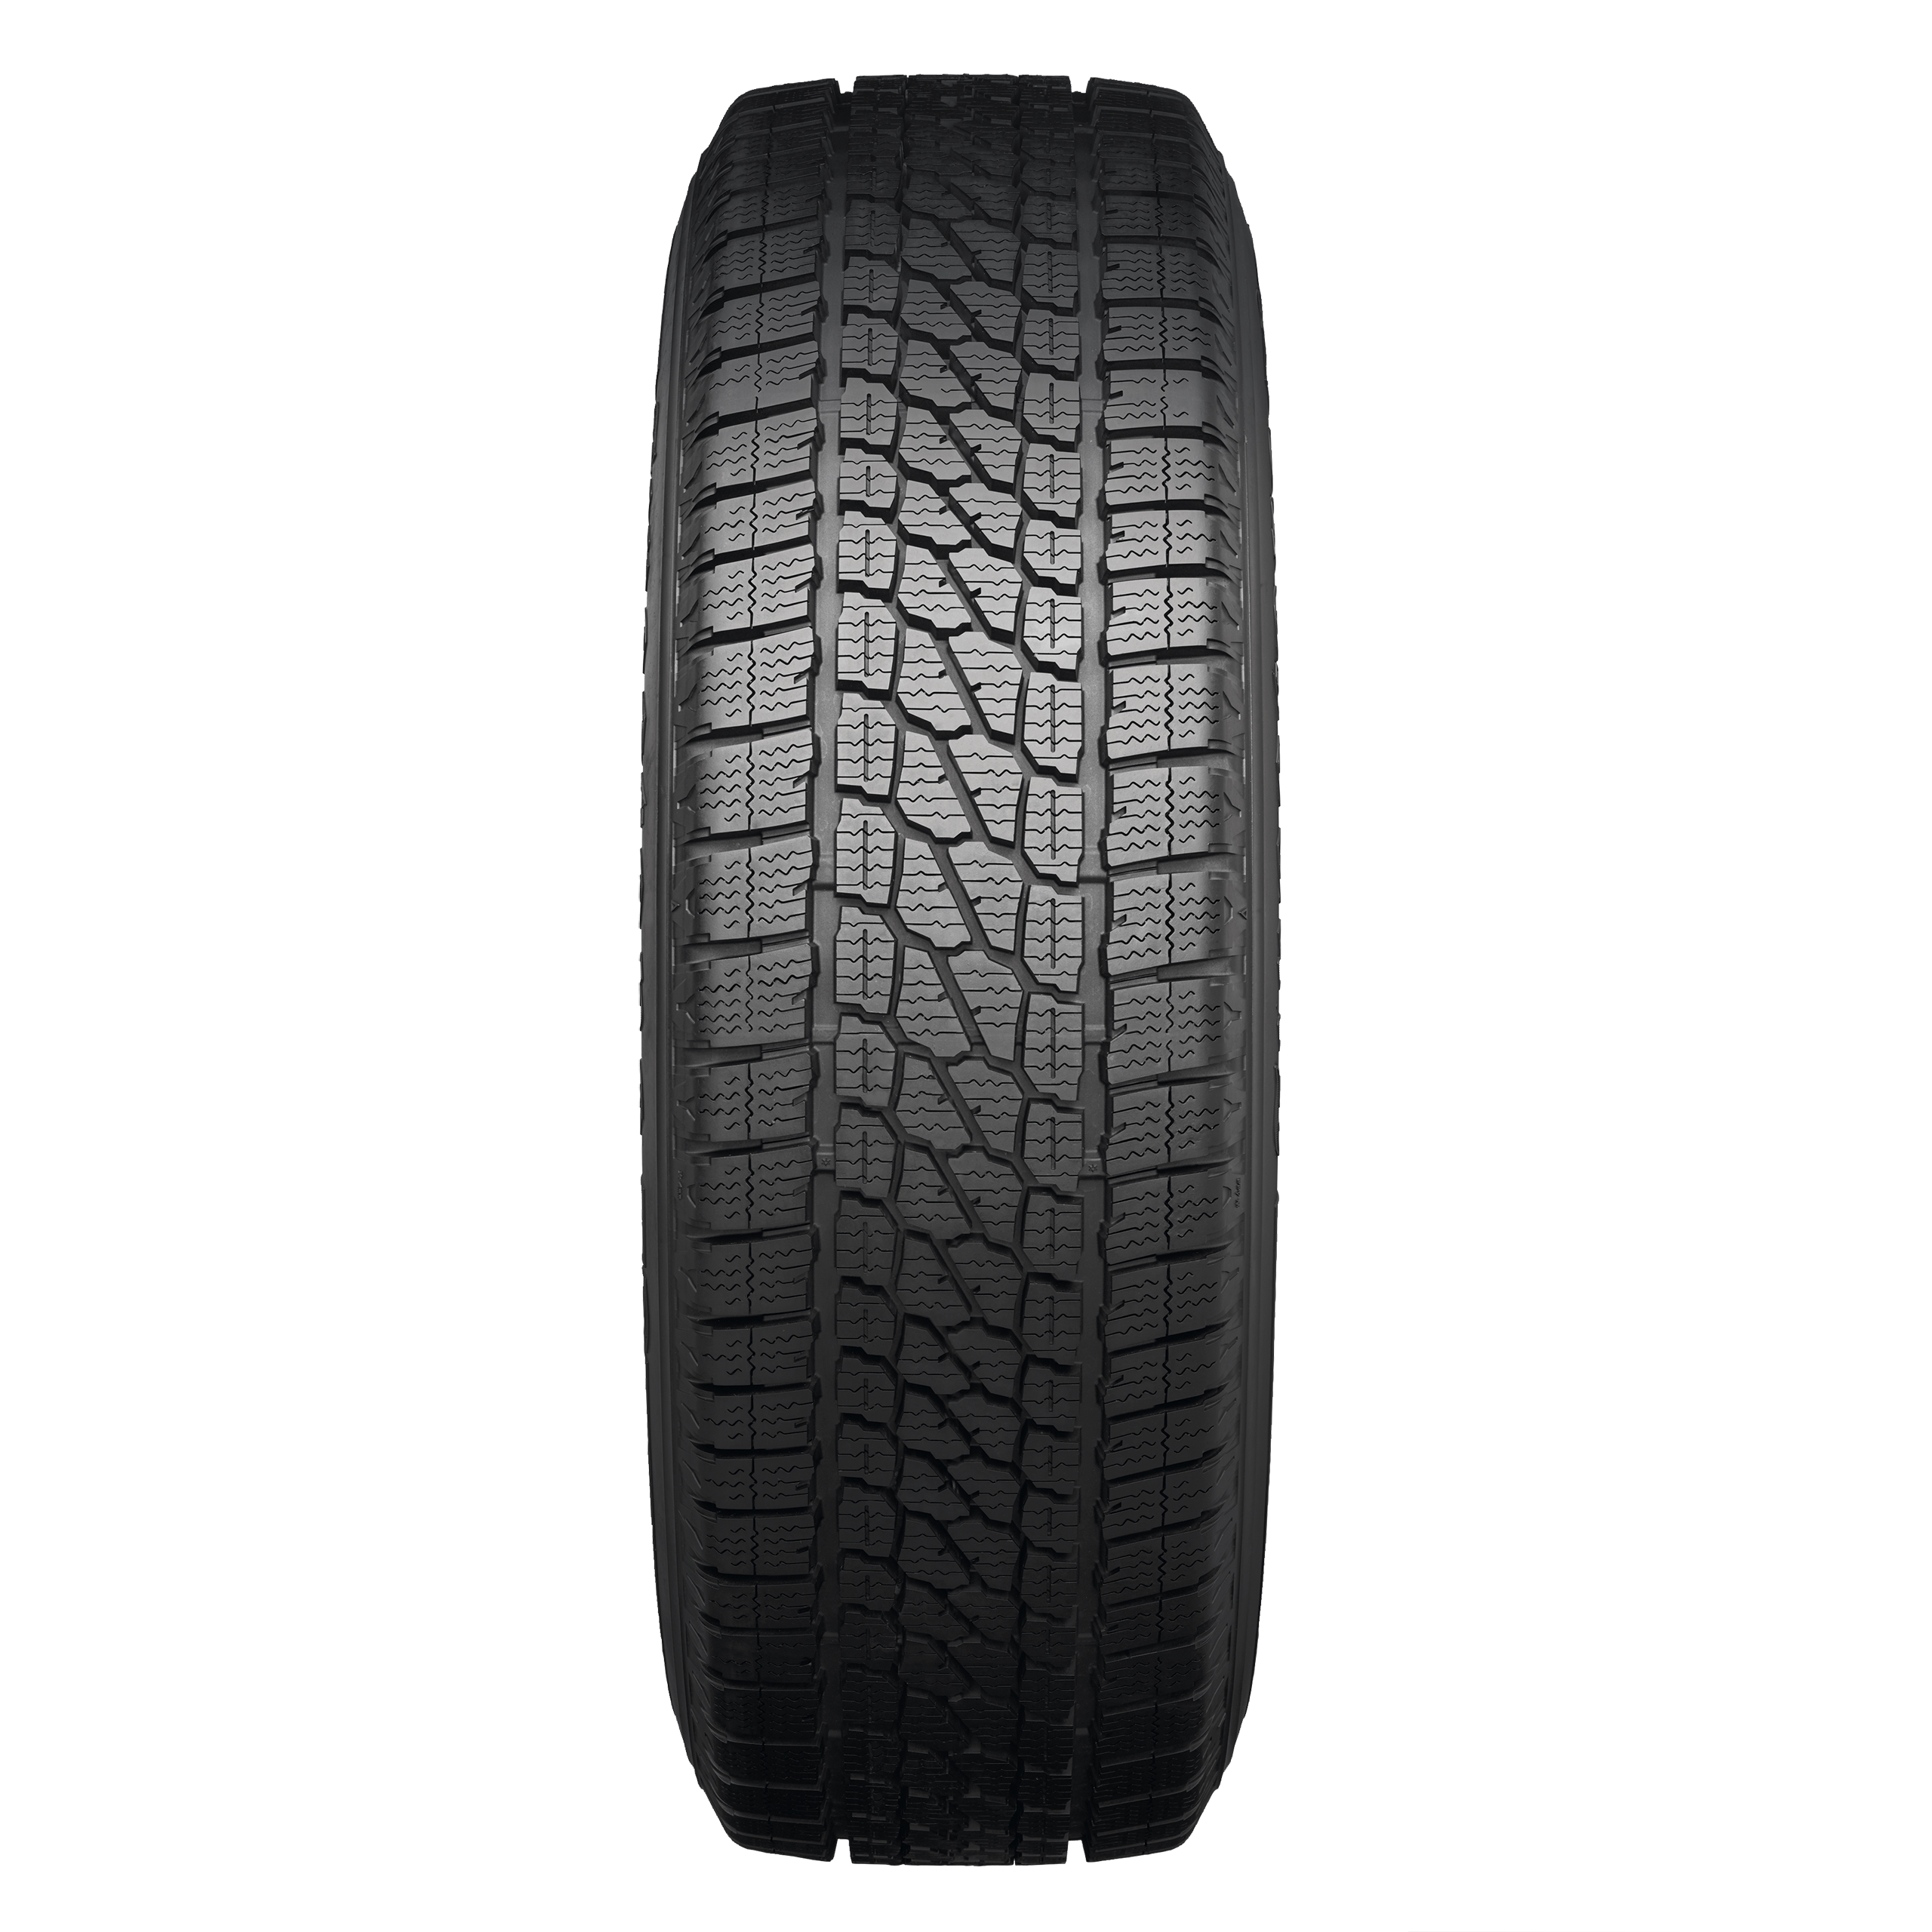 Firestone Vanhawk 2 Winter | What Tyre | Independent tyre comparison